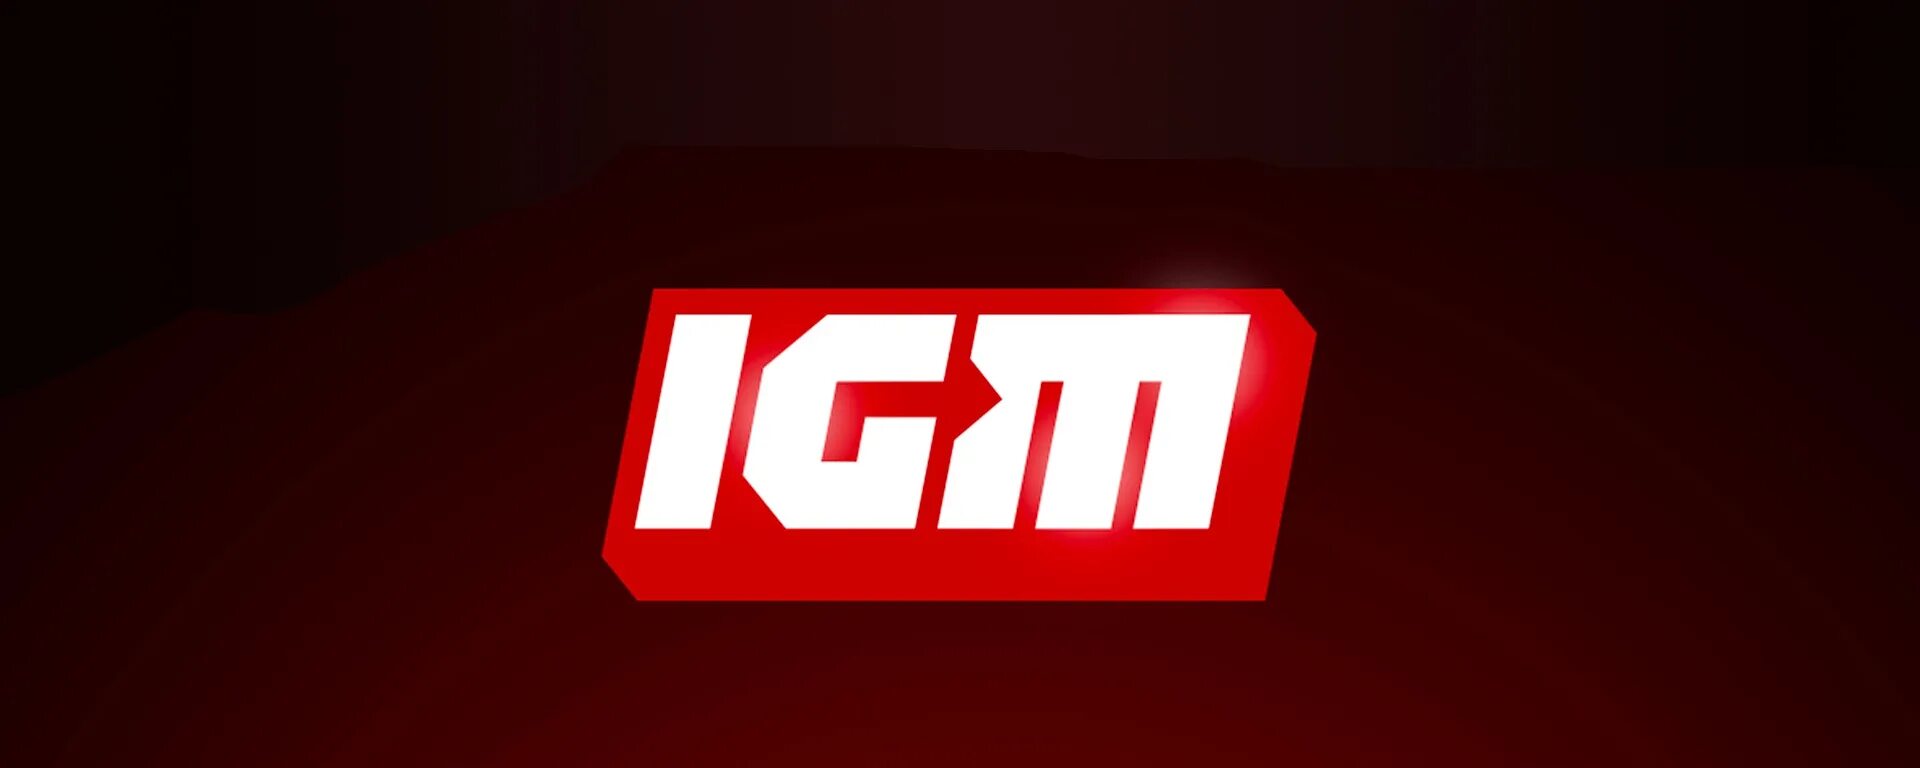 Igm store